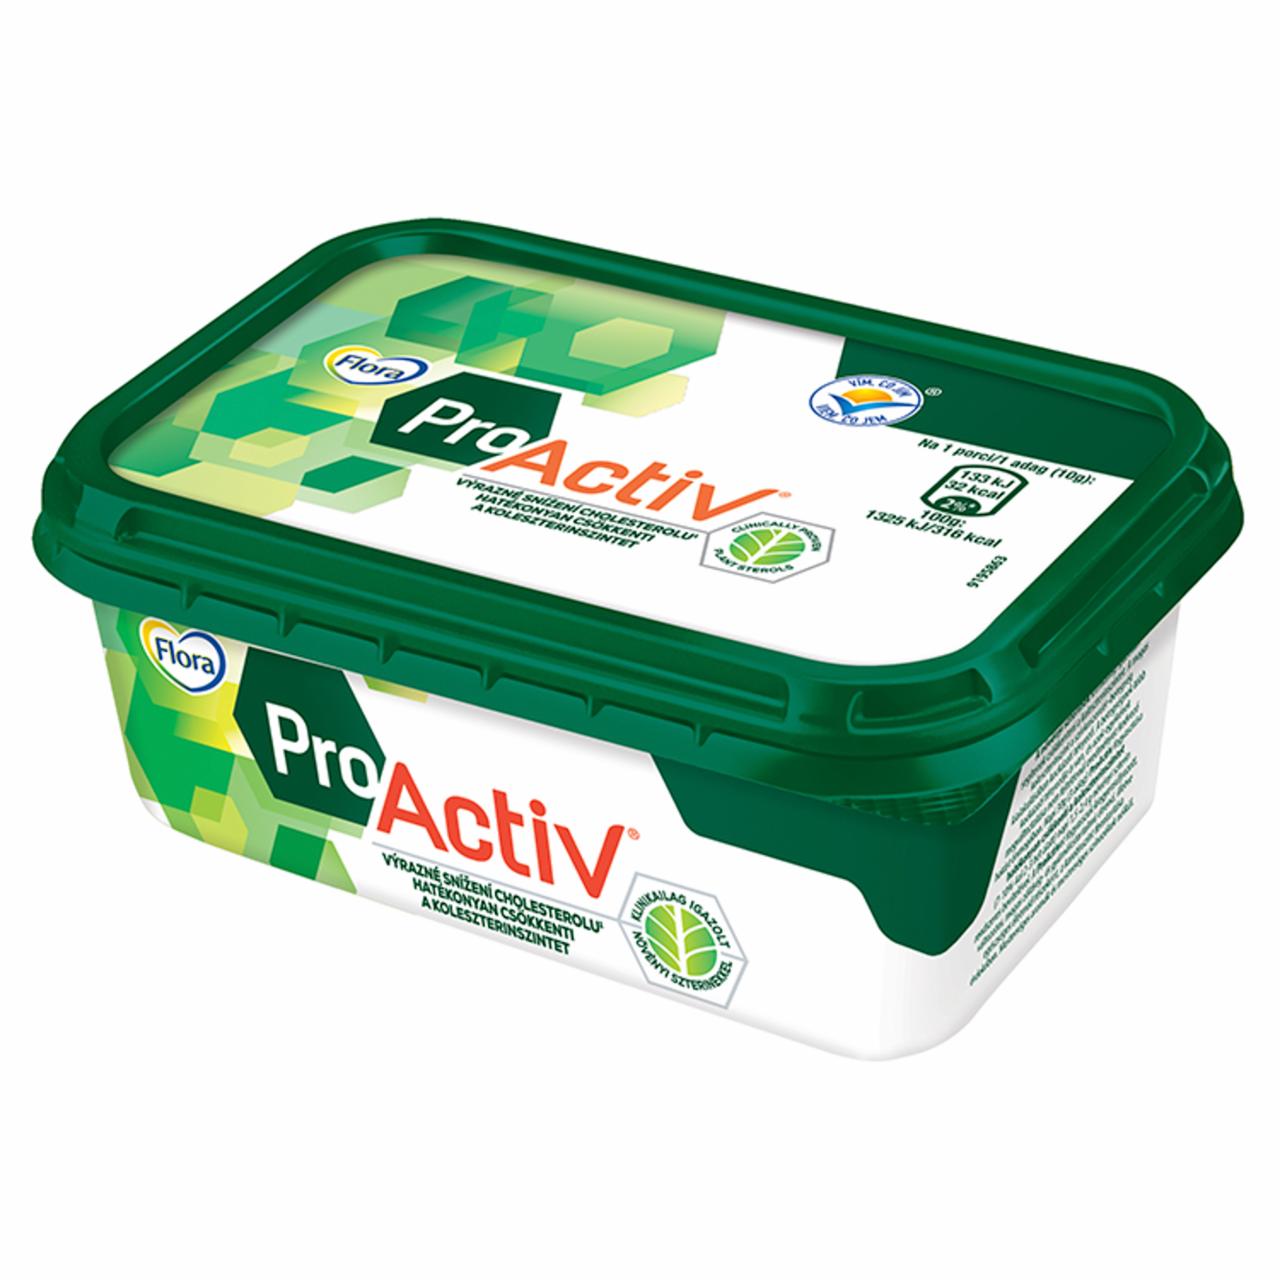 Képek - Flora ProActiv margarin hozzáadott növényi szterinnel 200 g